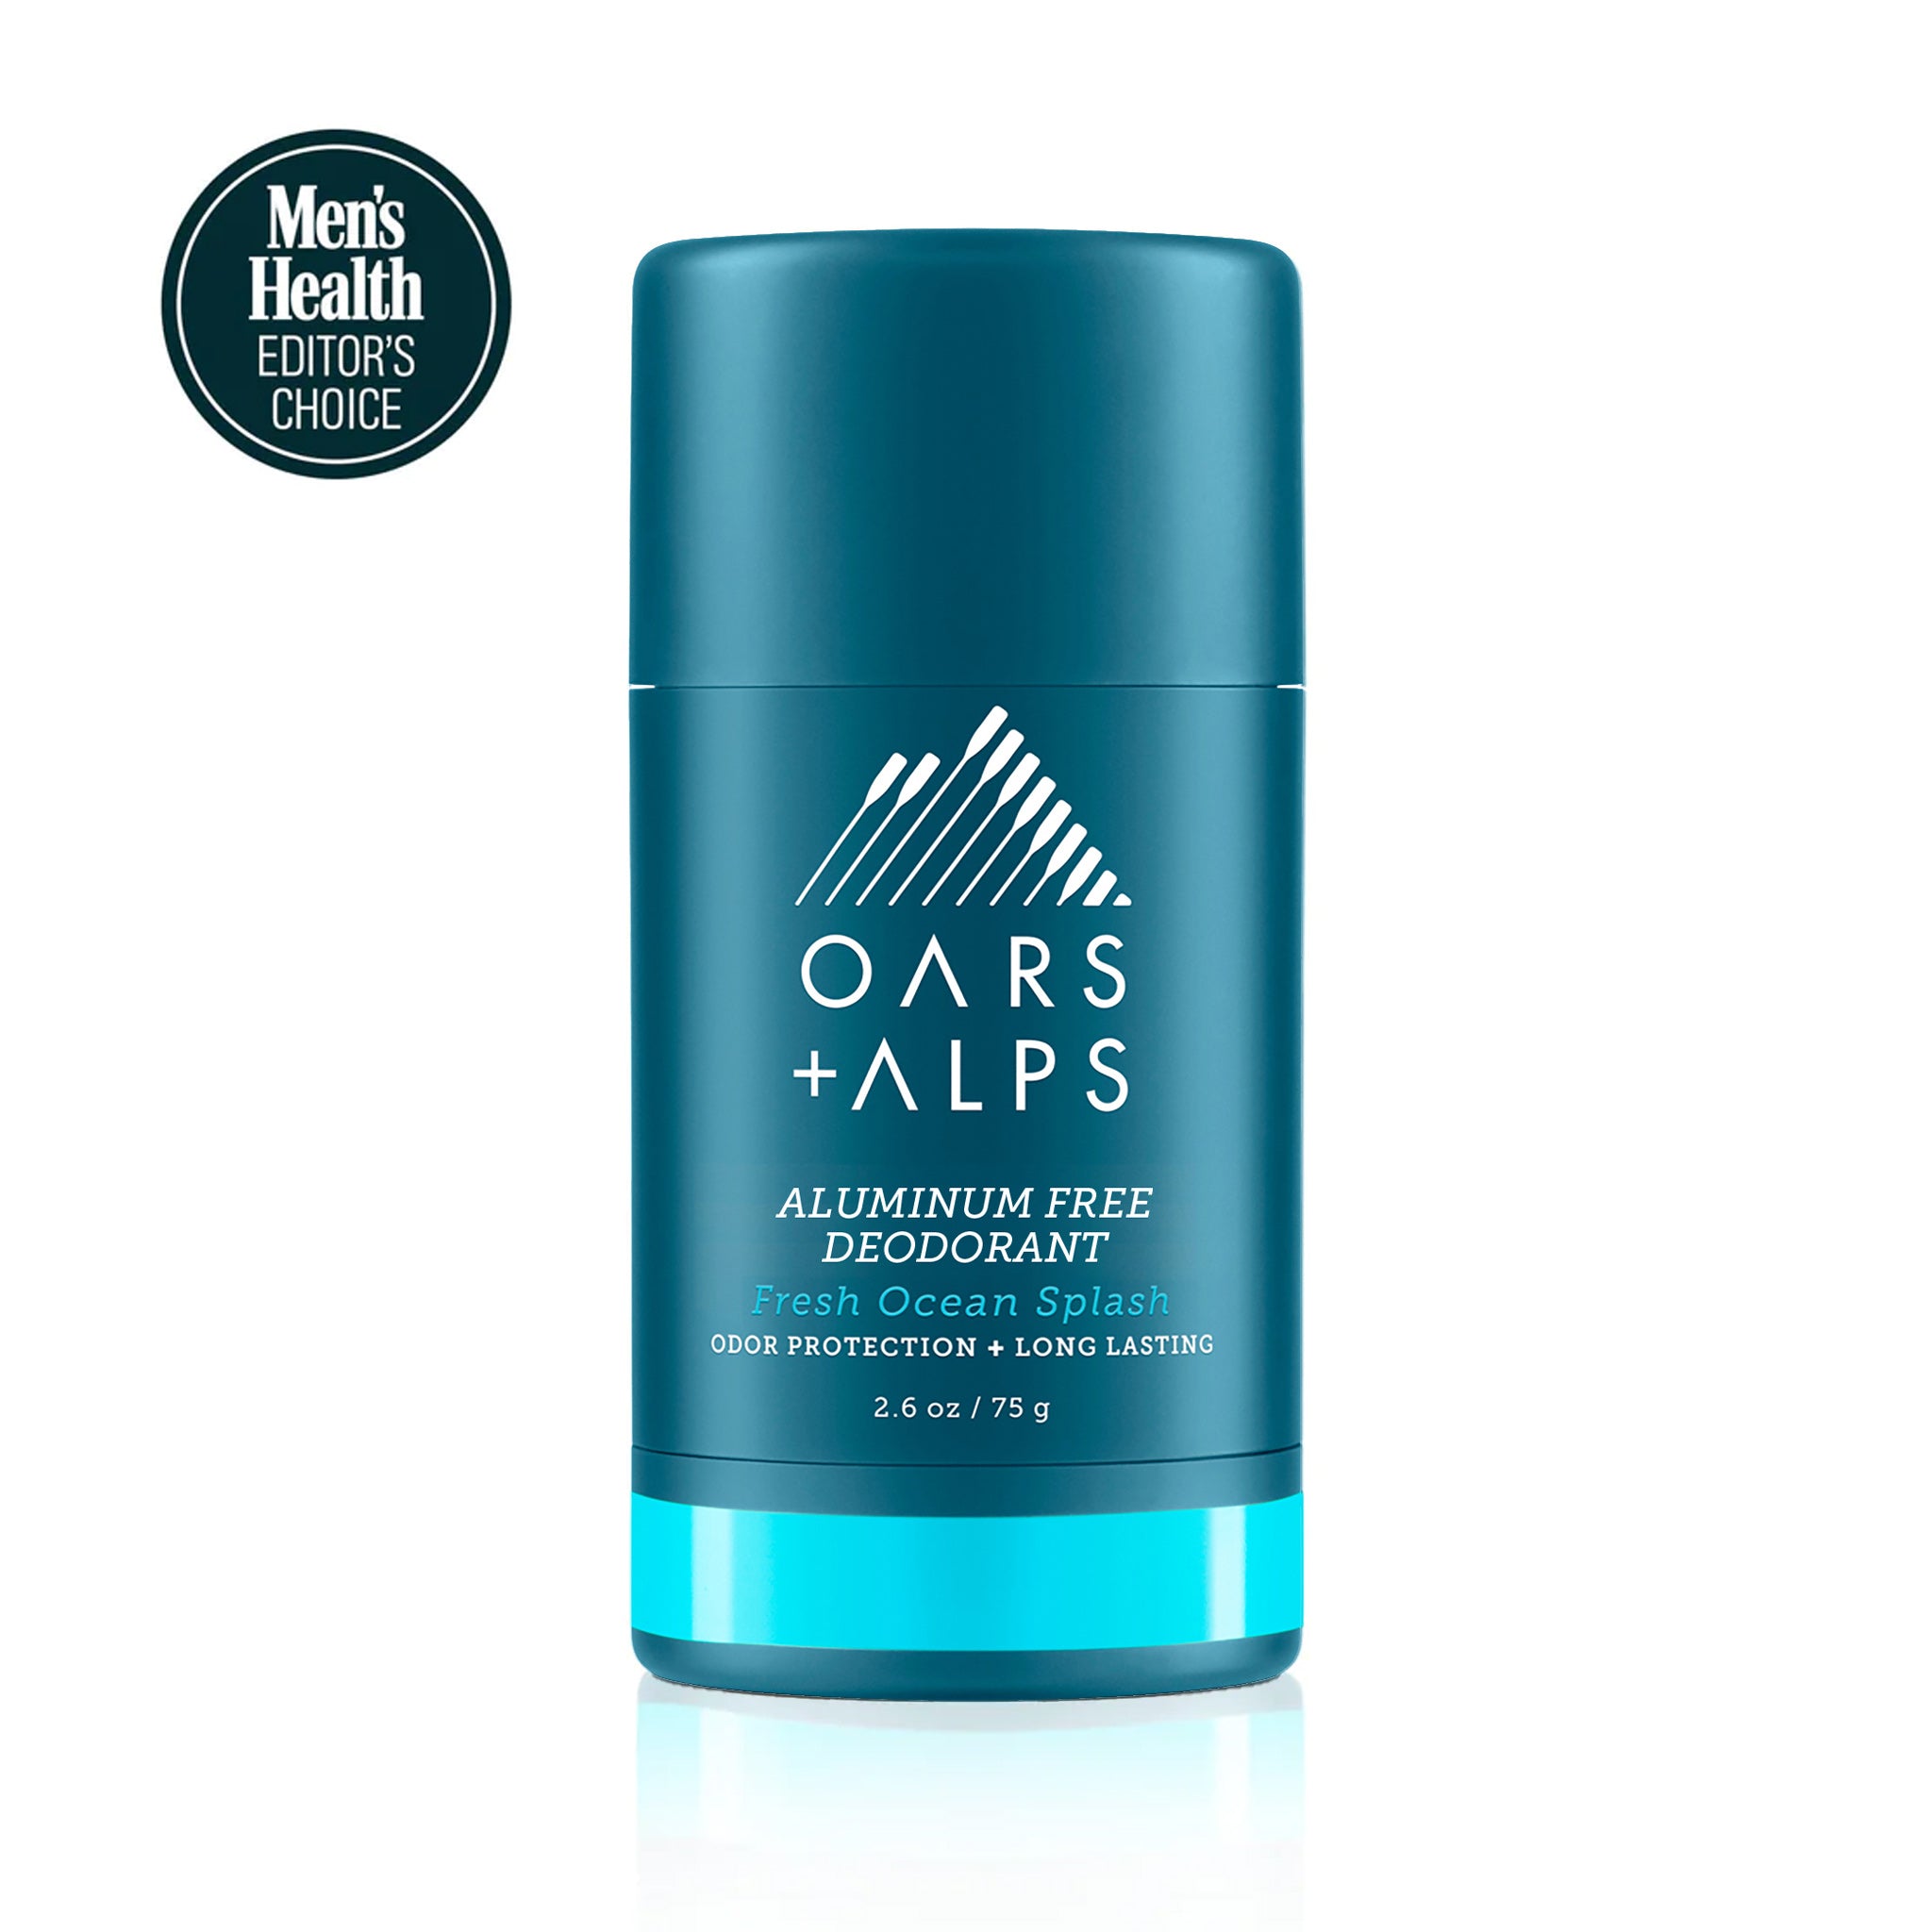 Men's Aluminum-Free Deodorant: Deodorant without Aluminum Oars + Alps